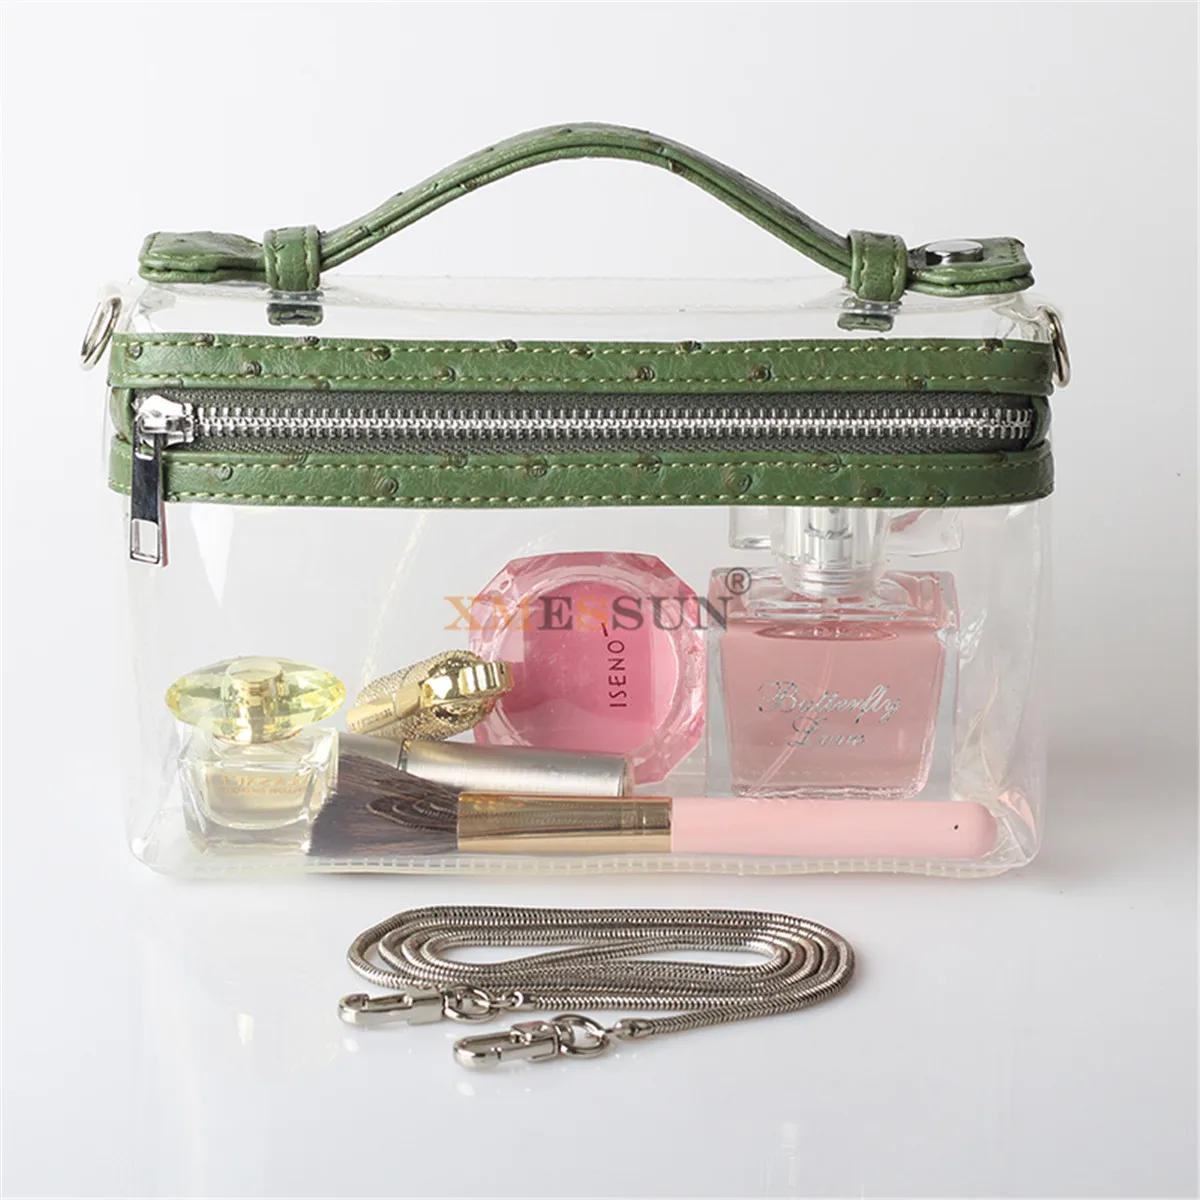 XMESSUN прозрачная сумка-тоут прозрачная акриловая ПВХ пластиковая коробка сумка Дубай женская девушка винтажная Ретро вечерняя сумочка трендовая сумка - Цвет: Ostrich Green(5)